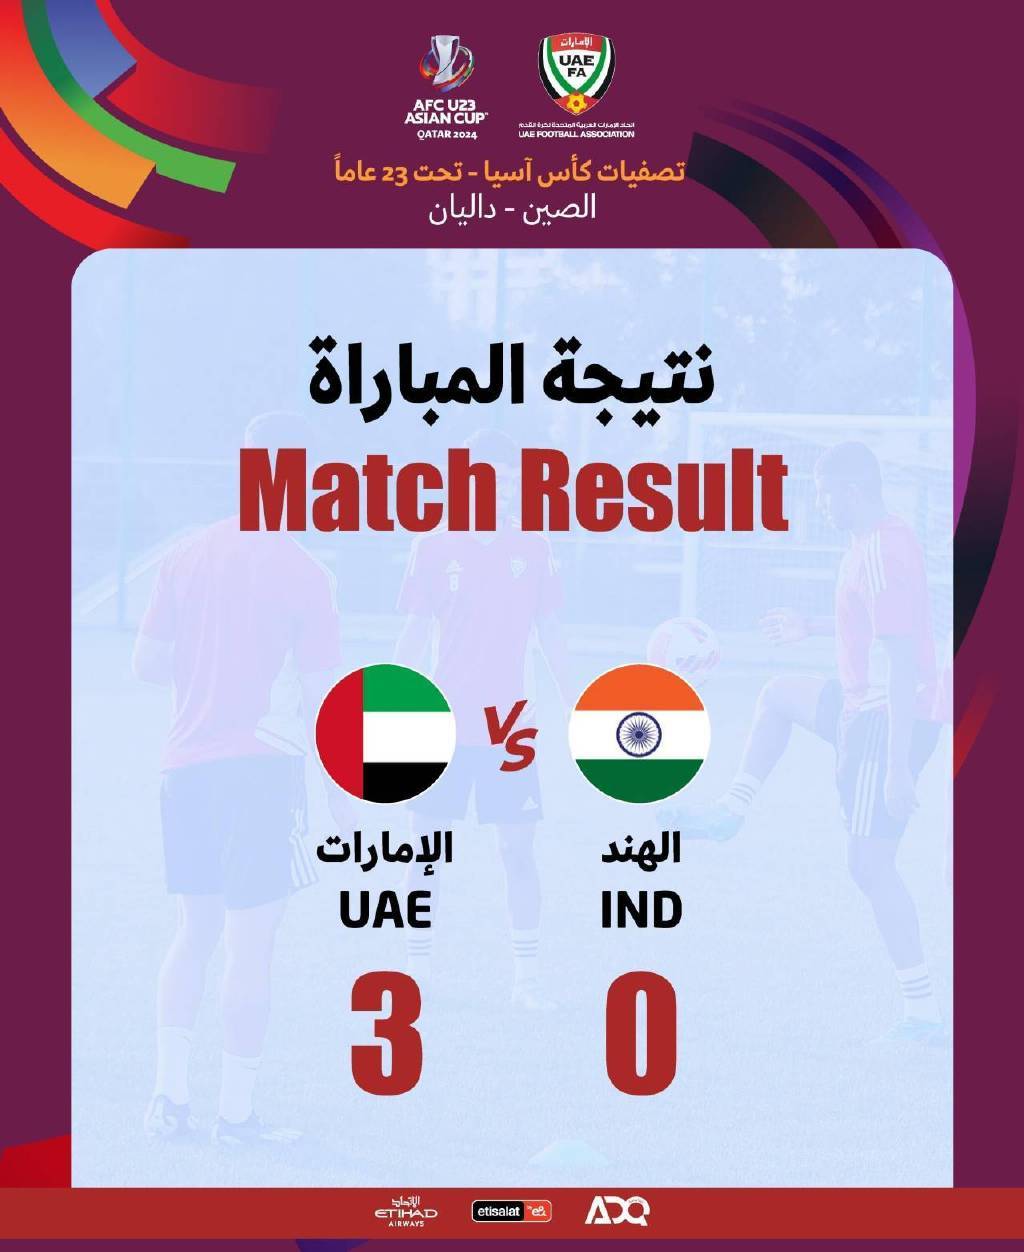 手机转接线:阿联酋3-0完胜印度夺头名 国奥列小组第二想出线需看别人脸色